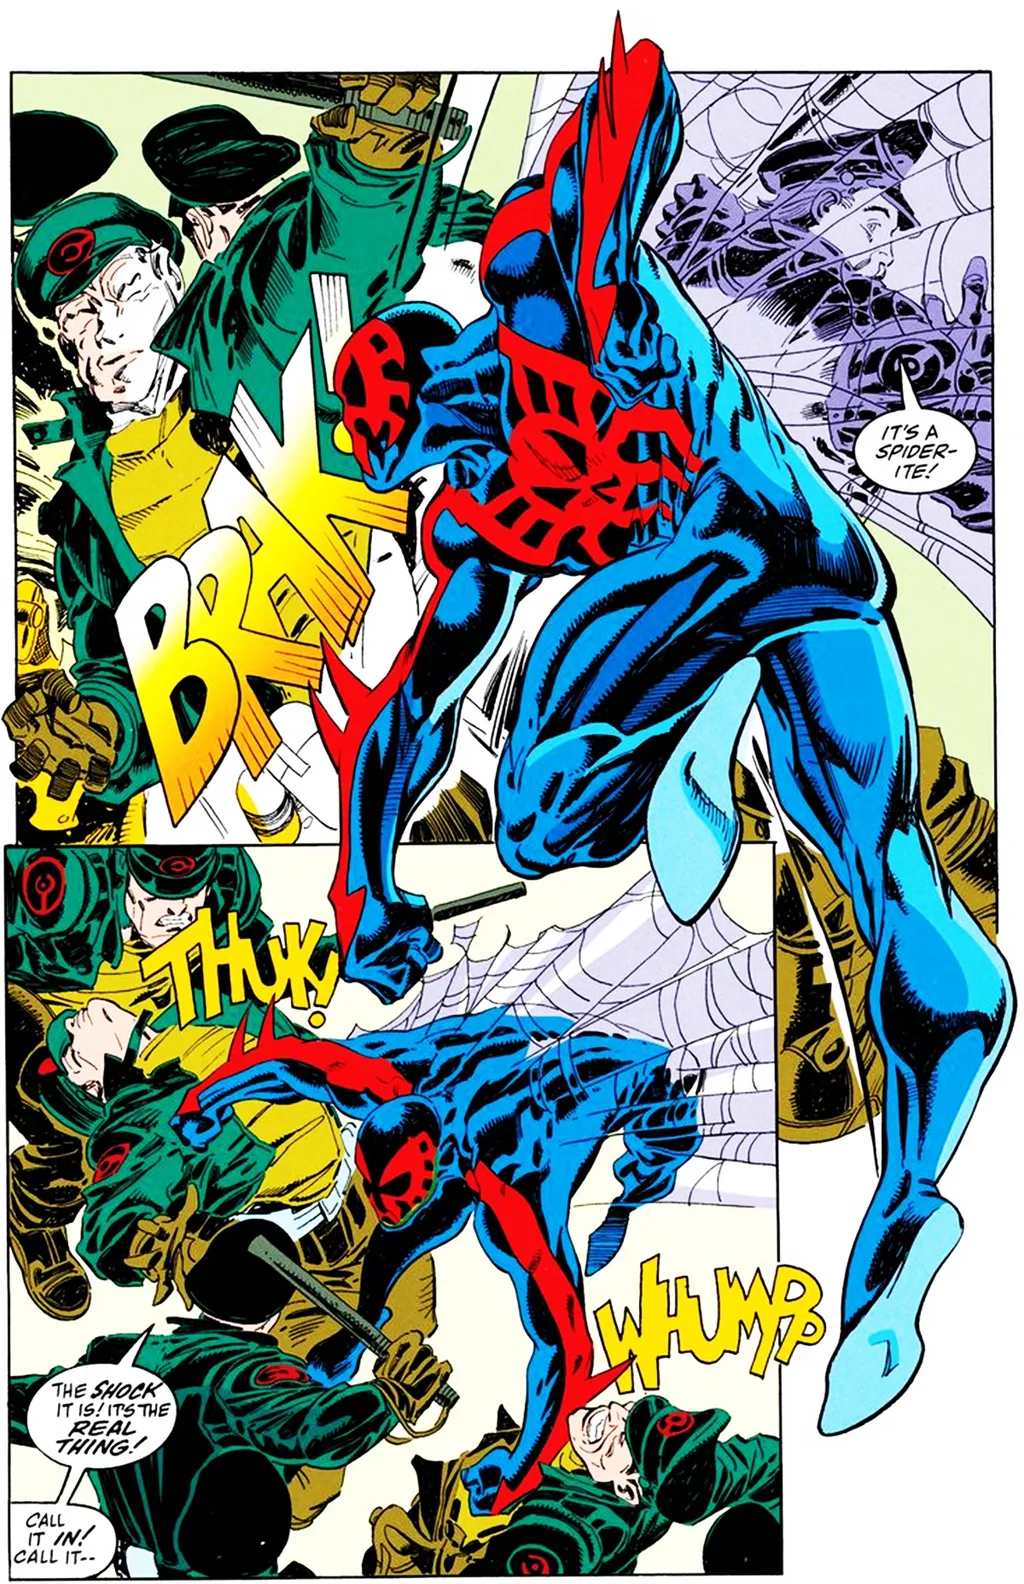 Poderes do Homem-Aranha 2099 são usados de forma mais agressiva, em um futuro distópico violento (Imagem: Reprodução/Marvel Comics)